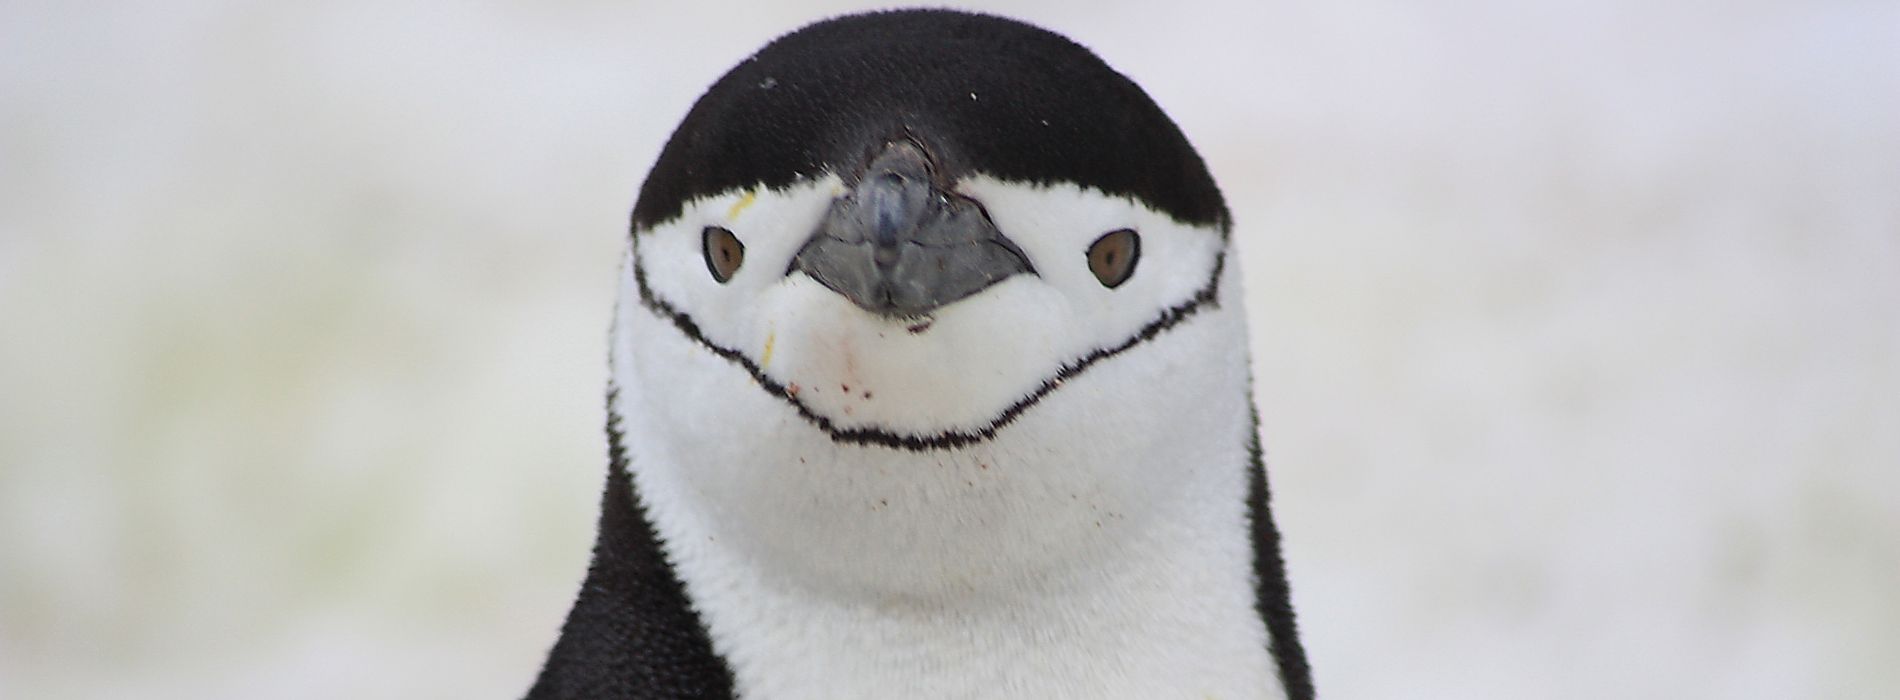 Are penguins dangerous?